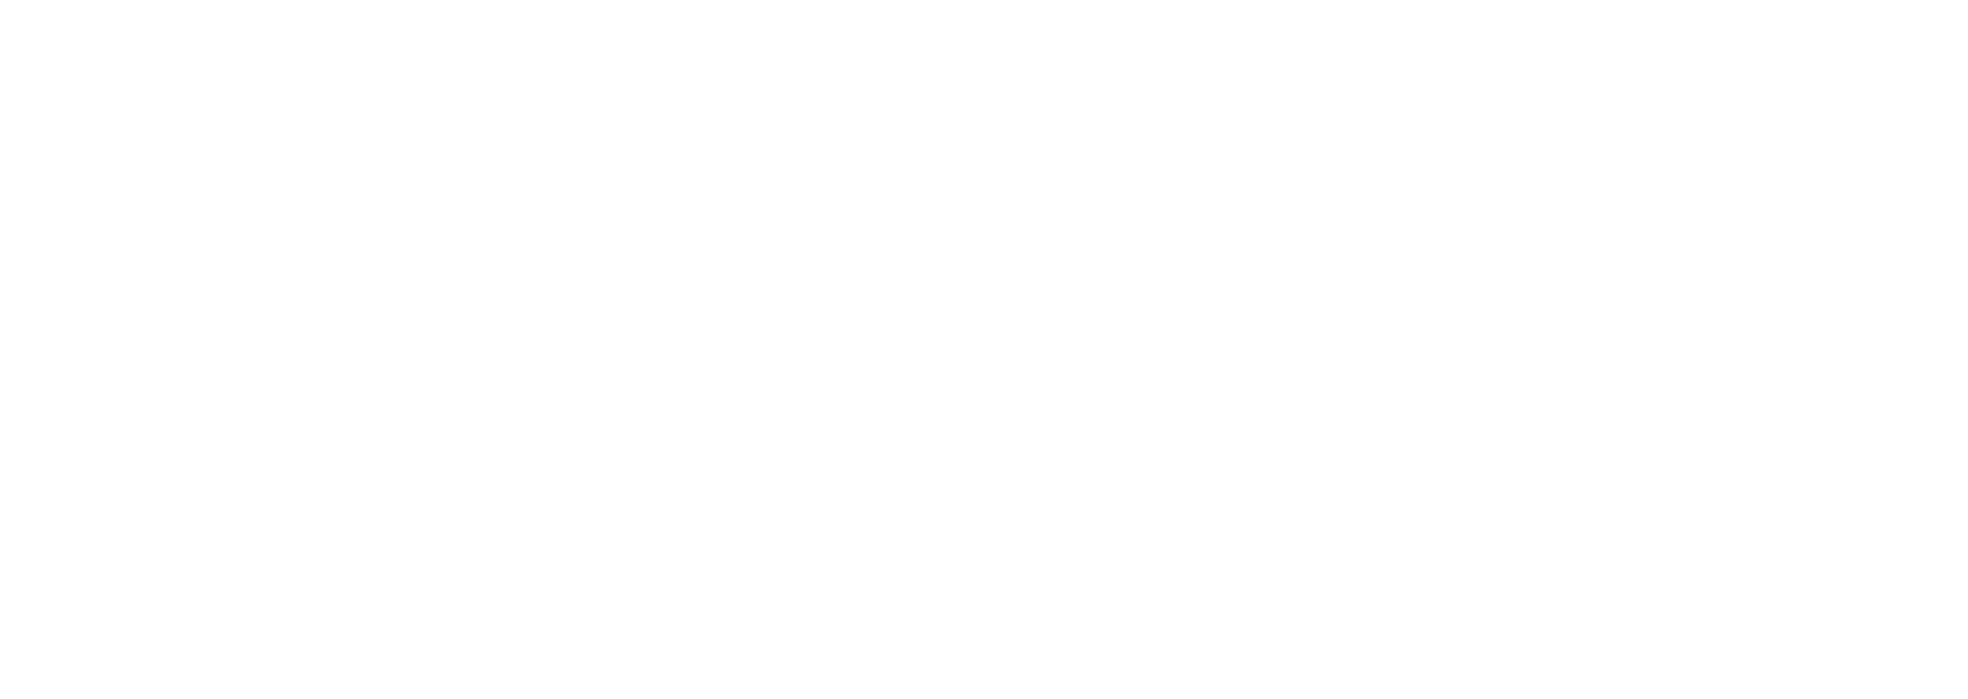 Echelon at 712 Seward - Seward Collective